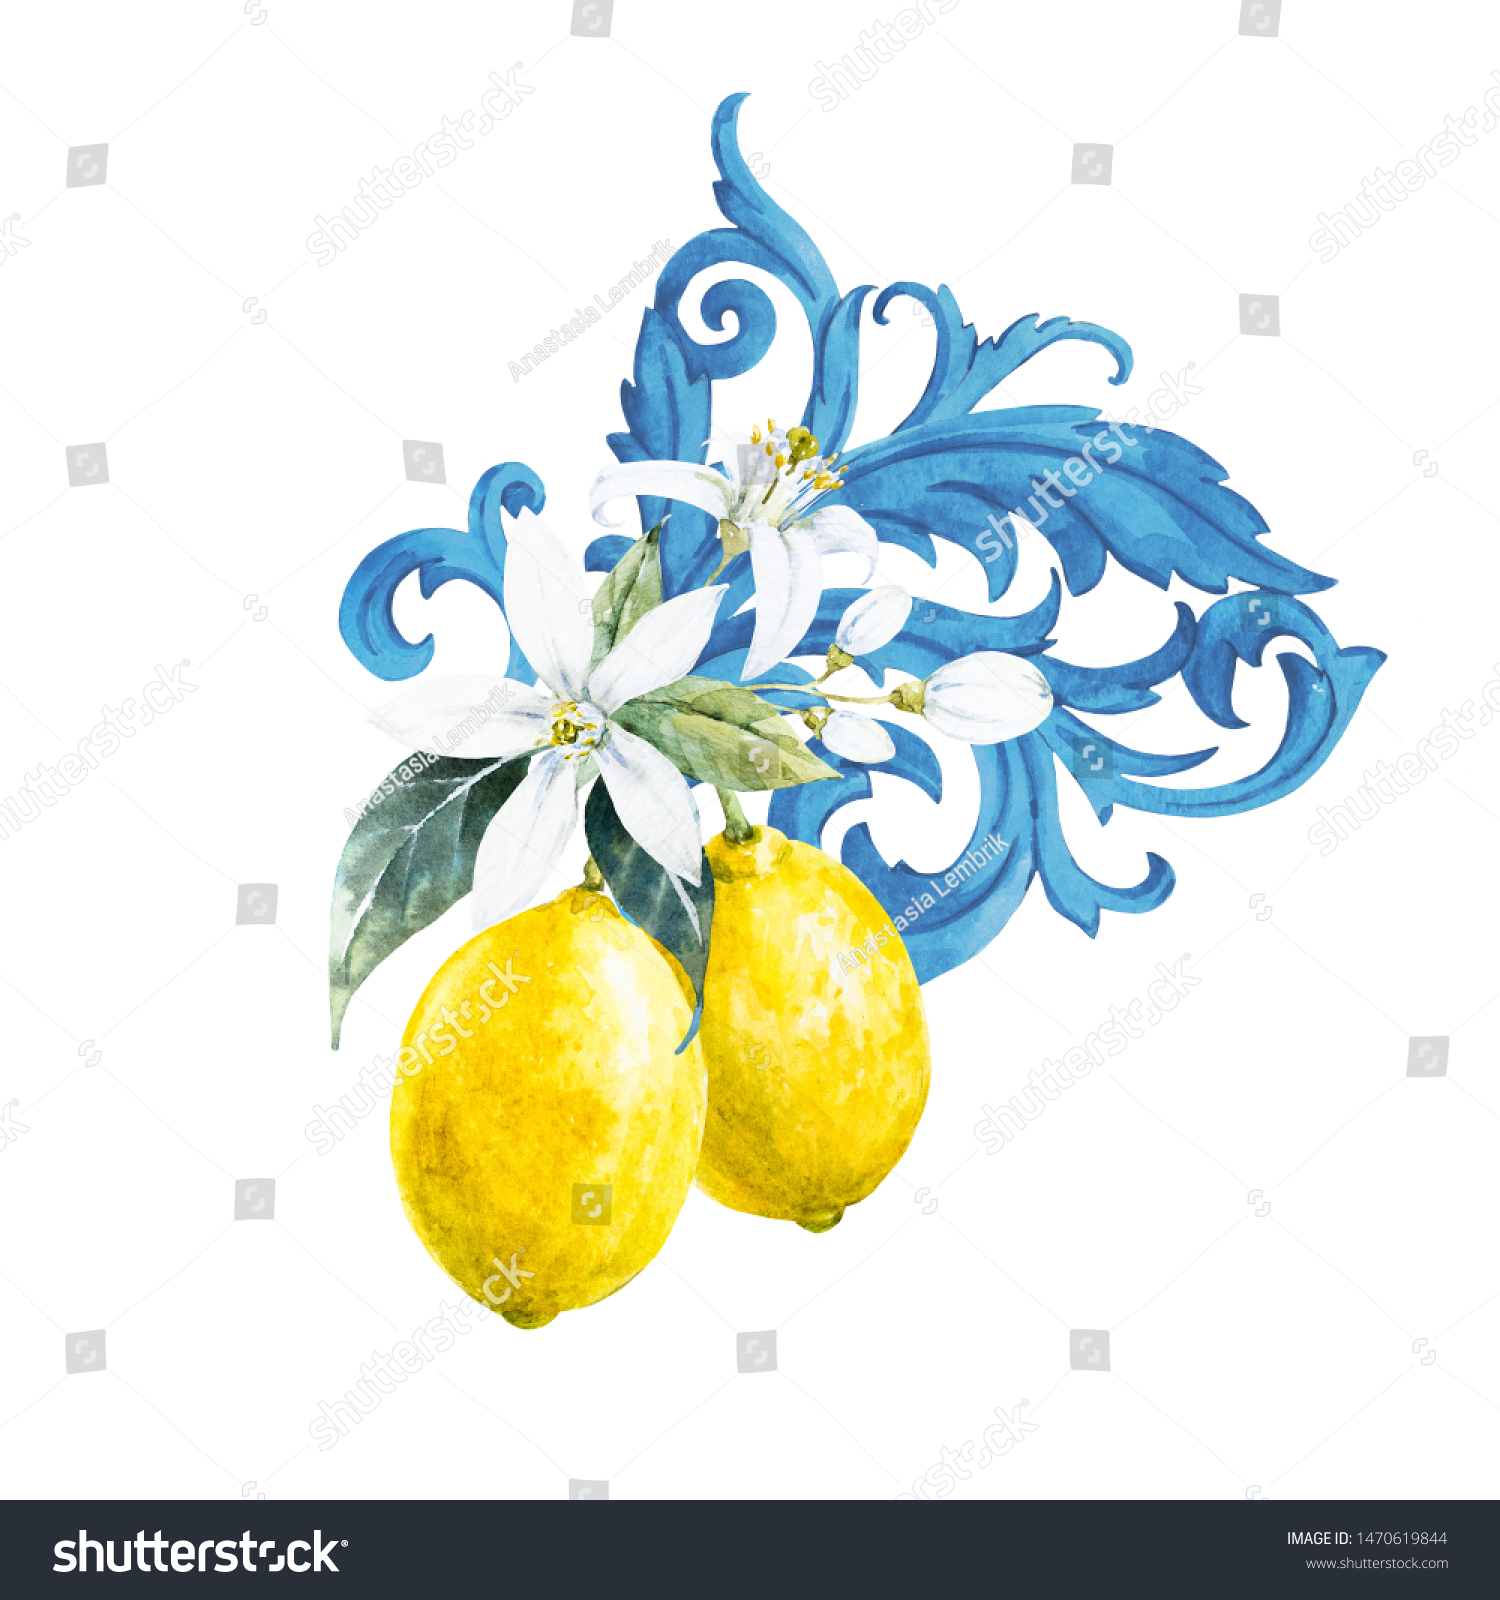 レモンとレモンの花の水彩イラスト 青のバロックの装飾 のイラスト素材